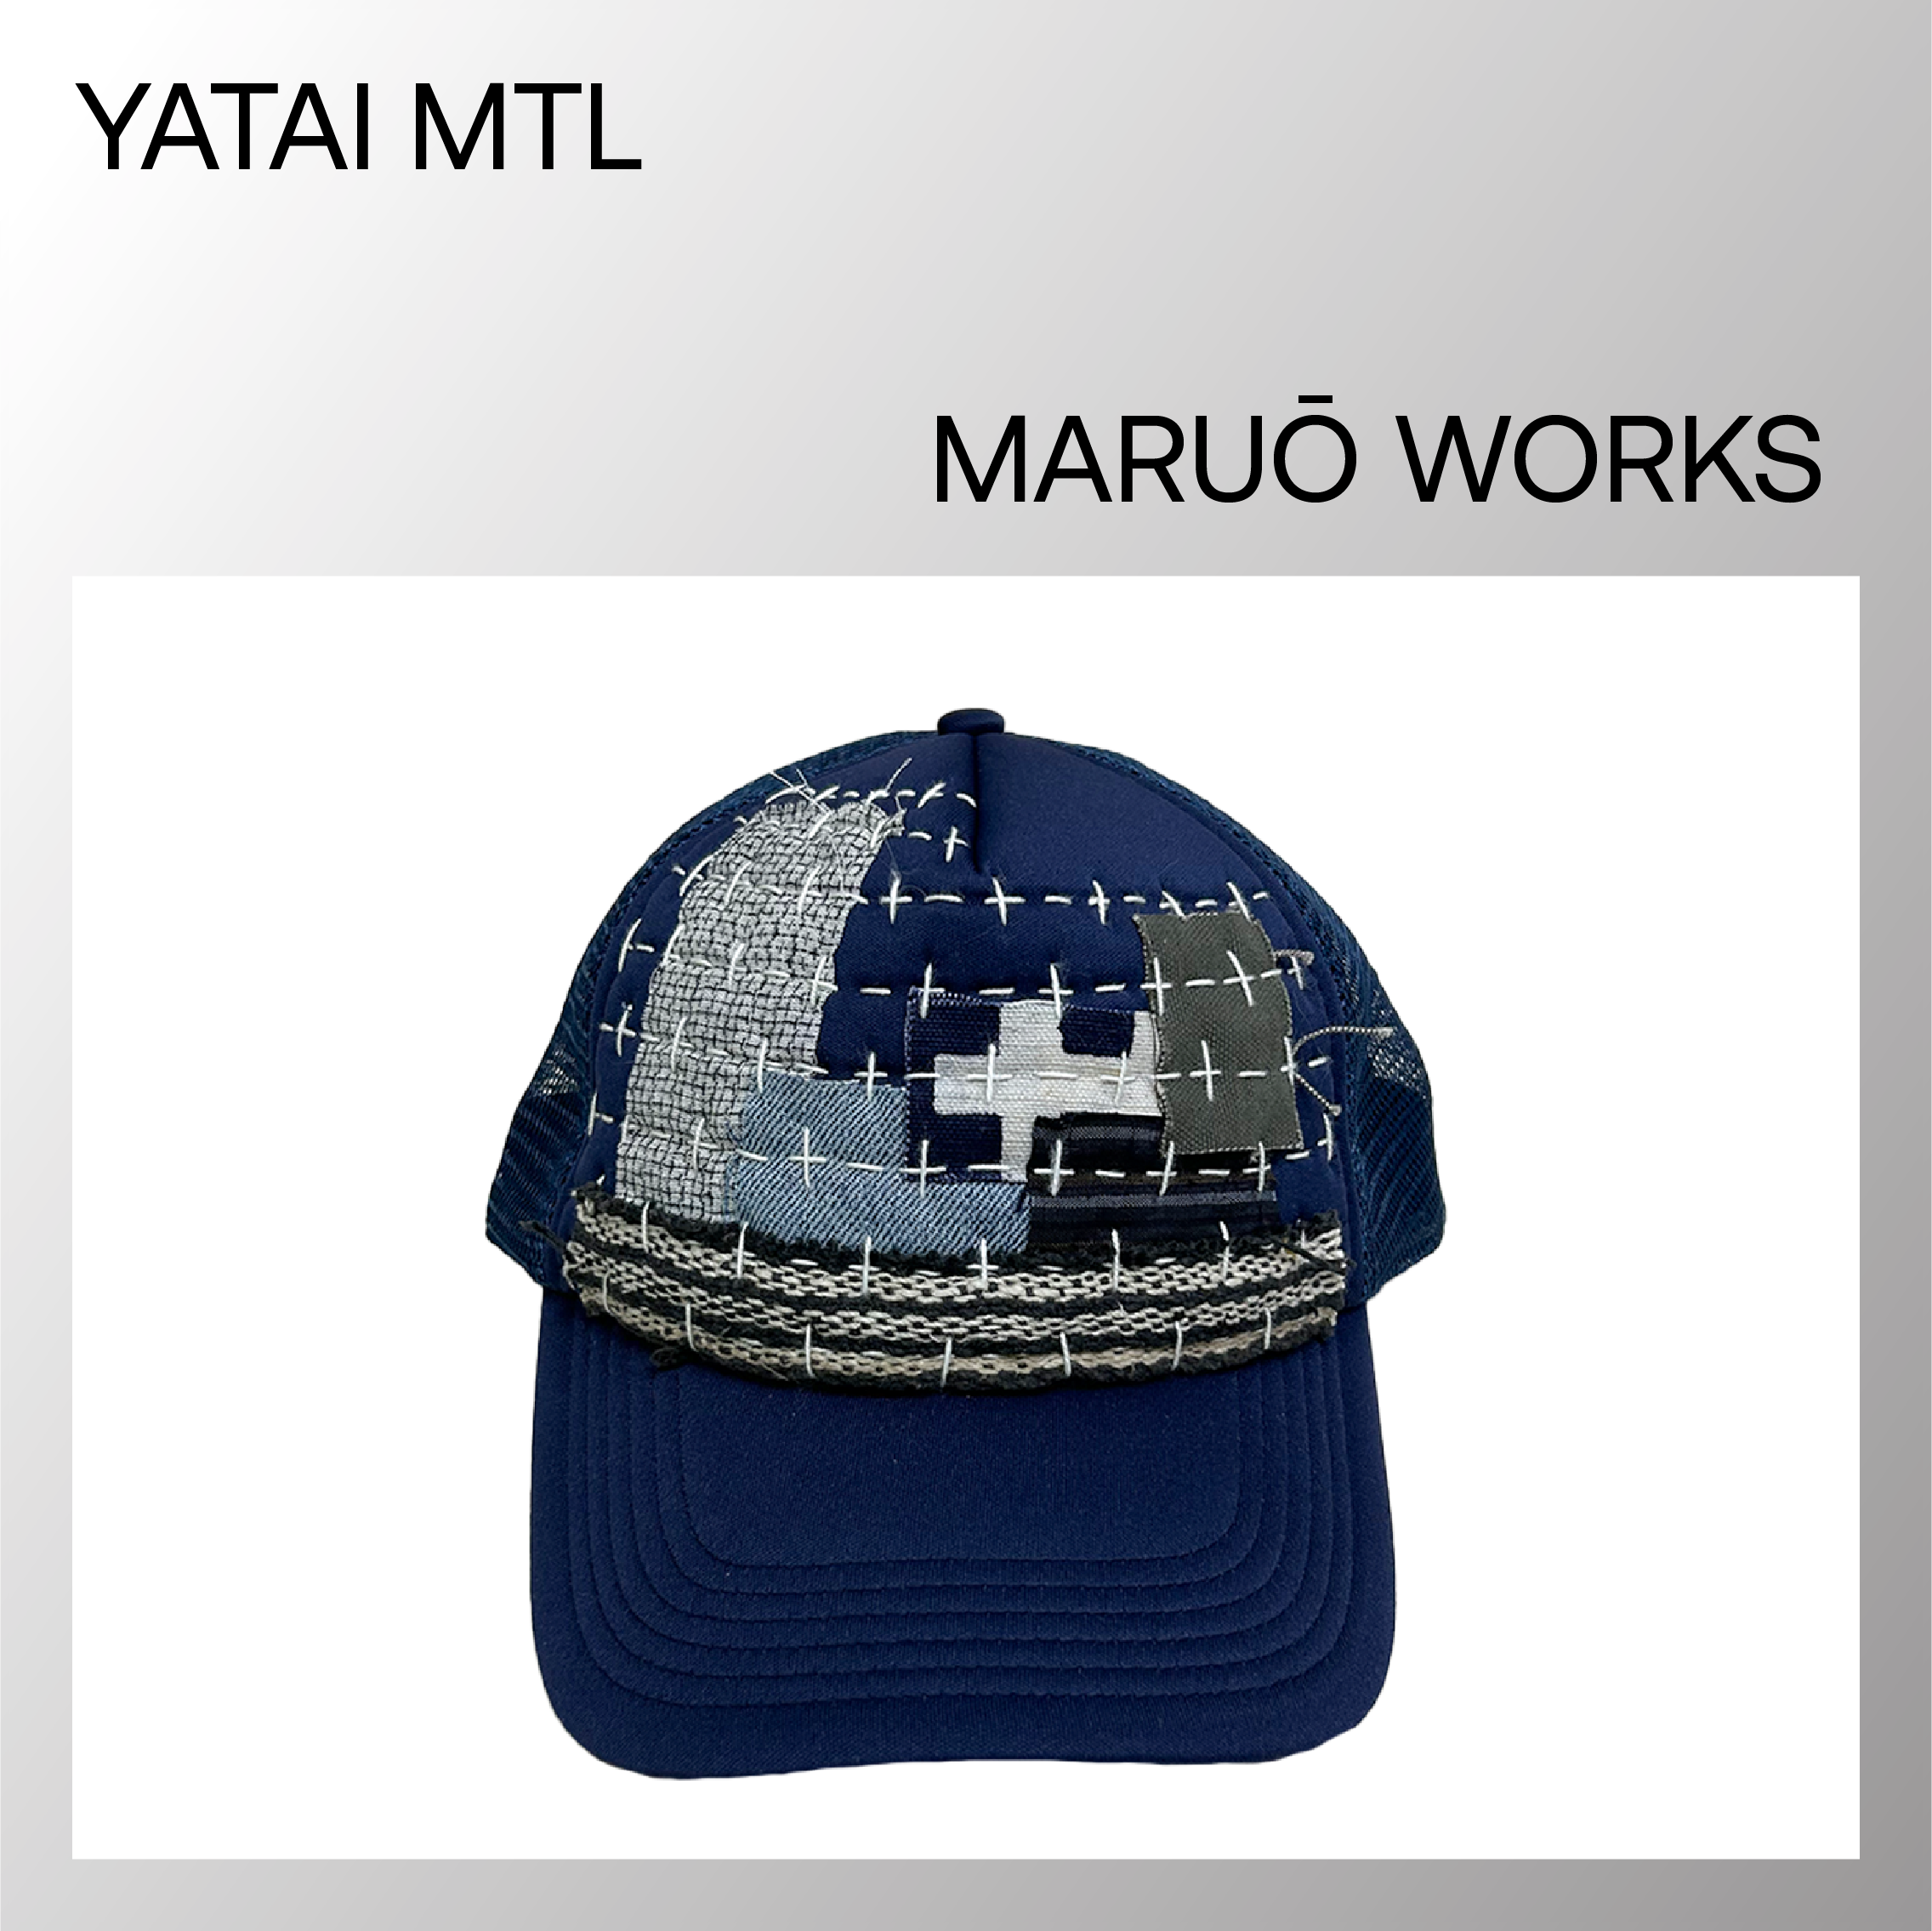 Maruō Works